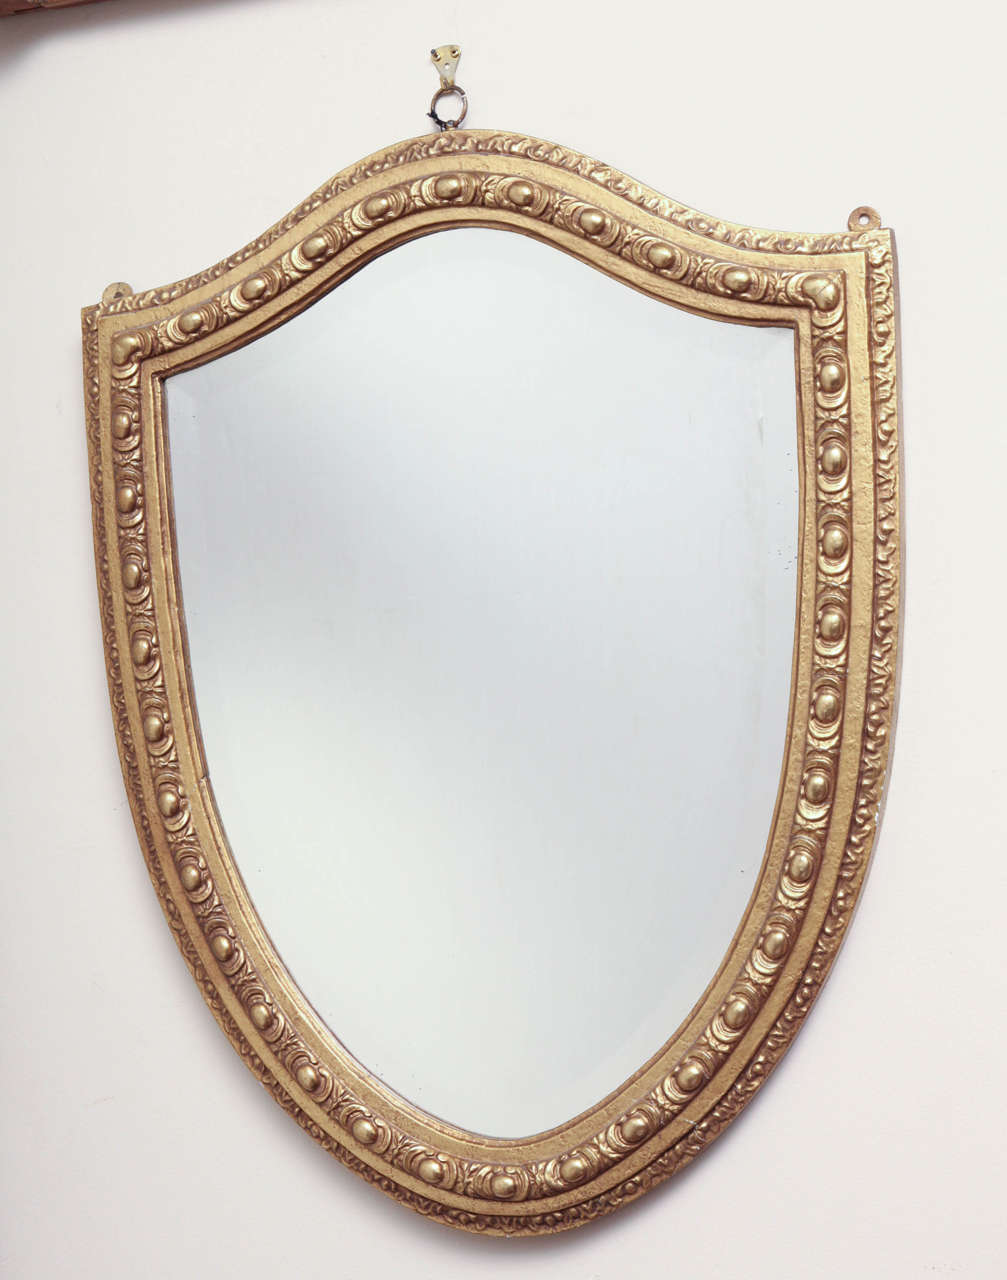 English, Shield-Shaped, Beveled Edge, Gilded Frame Mirror